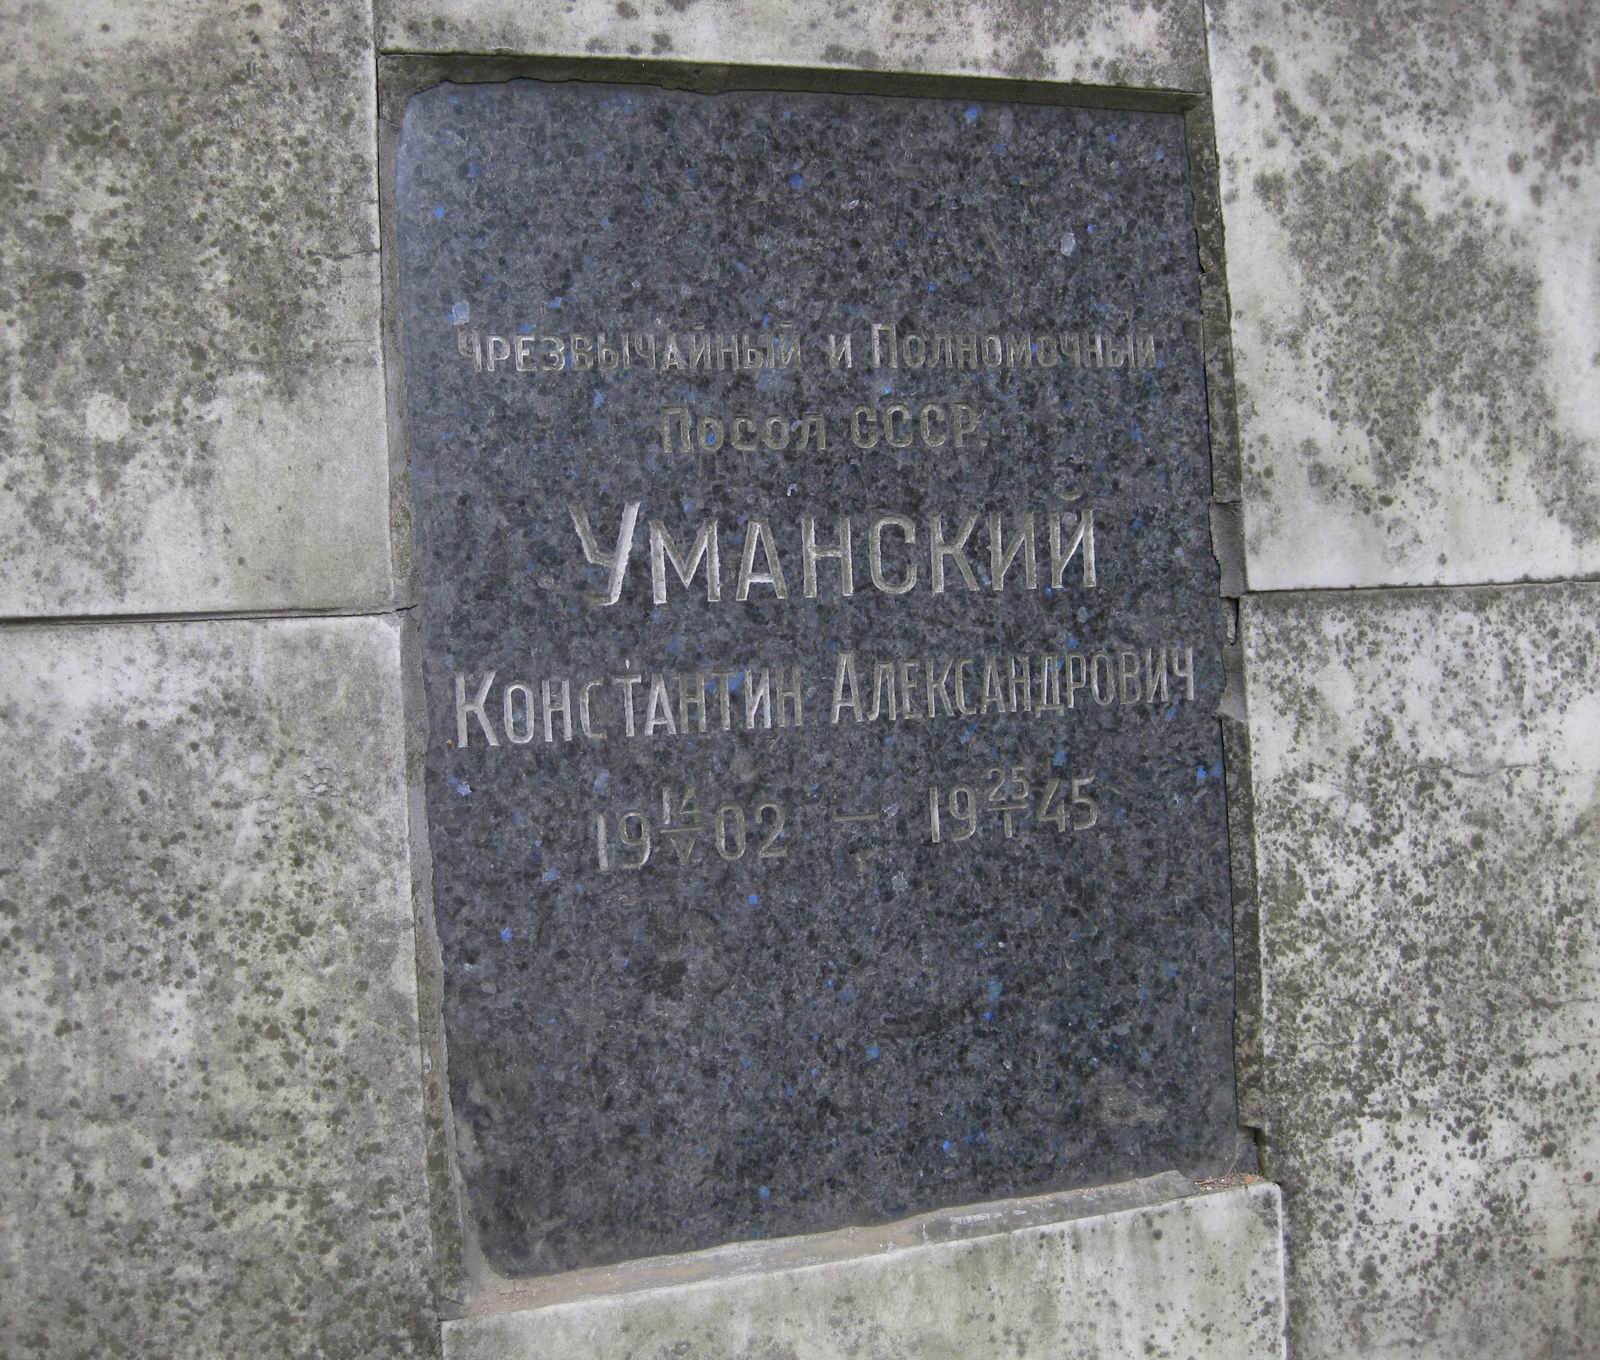 Плита на нише Уманского К.А. (1902–1945), на Новодевичьем кладбище (колумбарий [1]–3–1). Нажмите левую кнопку мыши, чтобы увидеть общий вид.